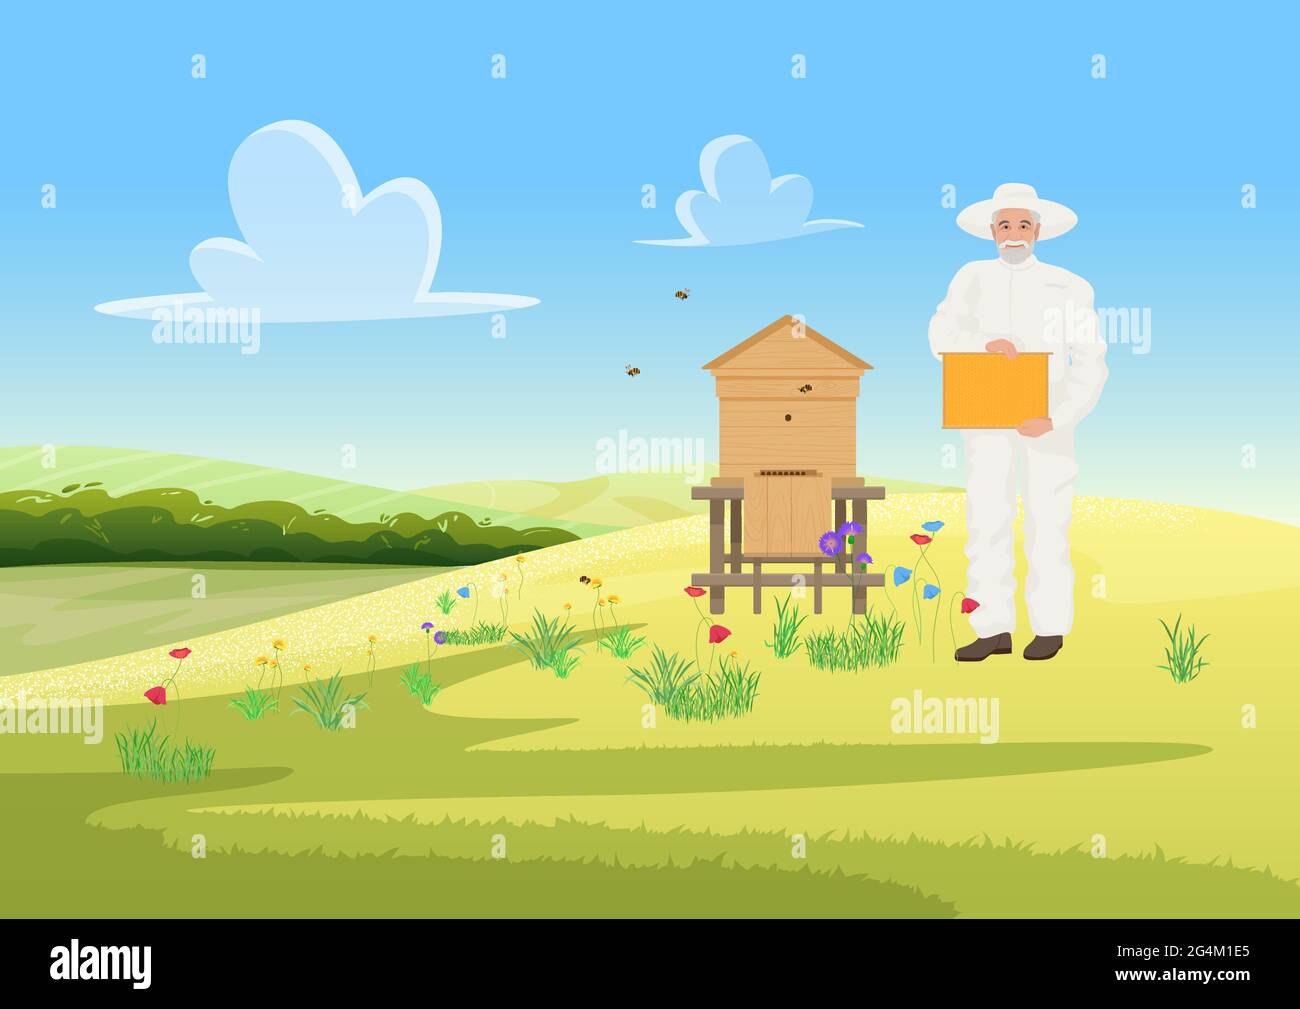 Les apiculteurs travaillent dans l'apiculture, l'agriculture agricole, le miel provenant de l'illustration vectorielle de ruches en bois. Homme de dessin animé en uniforme de protection, tenant le fond en nid d'abeille Illustration de Vecteur